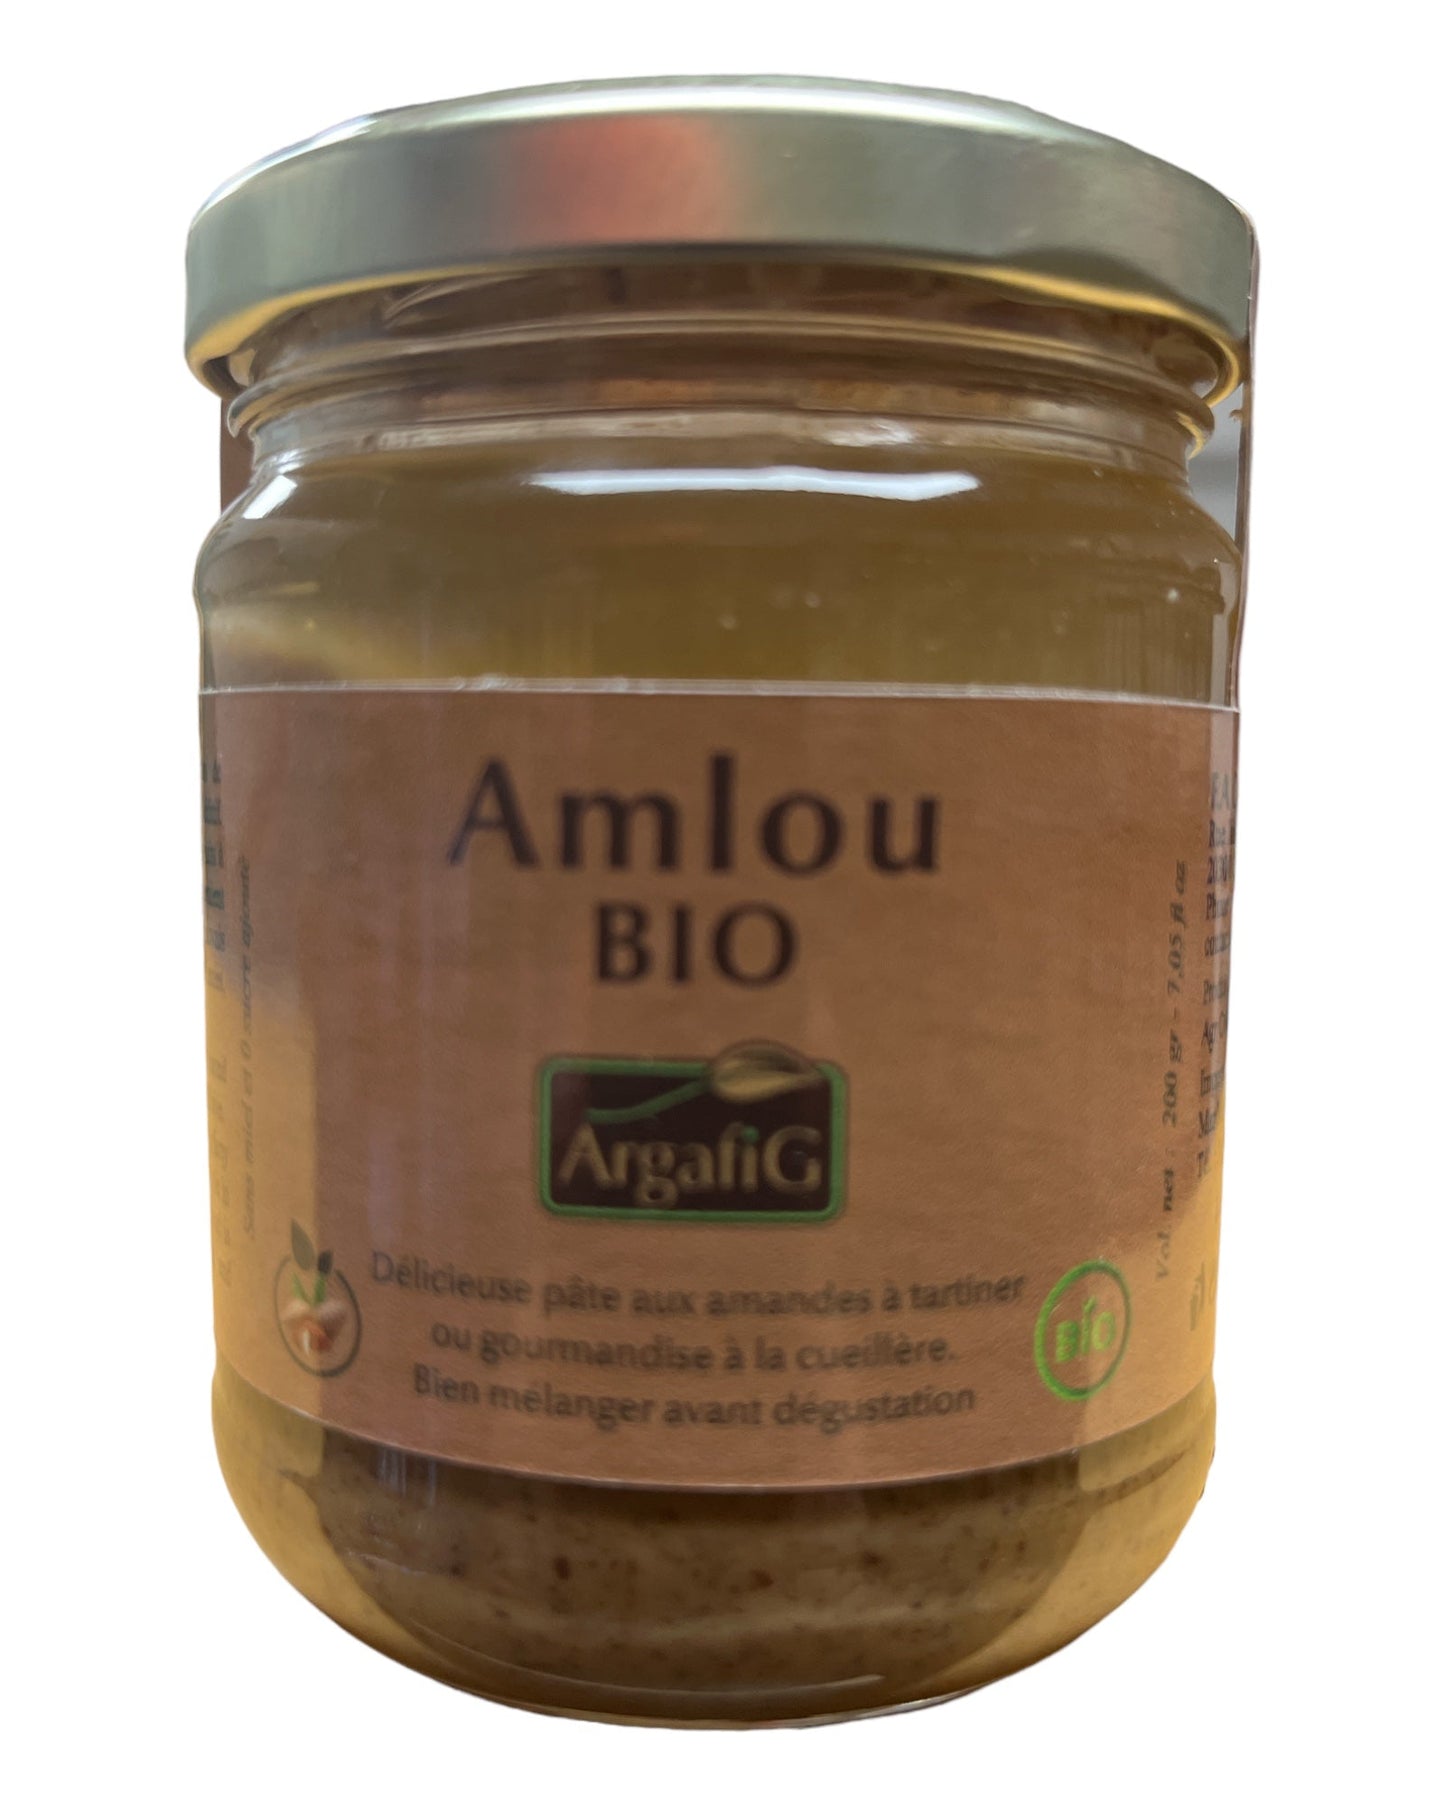 ArgaFiG Organic Amlou Almond Paste  Artisanal  200g